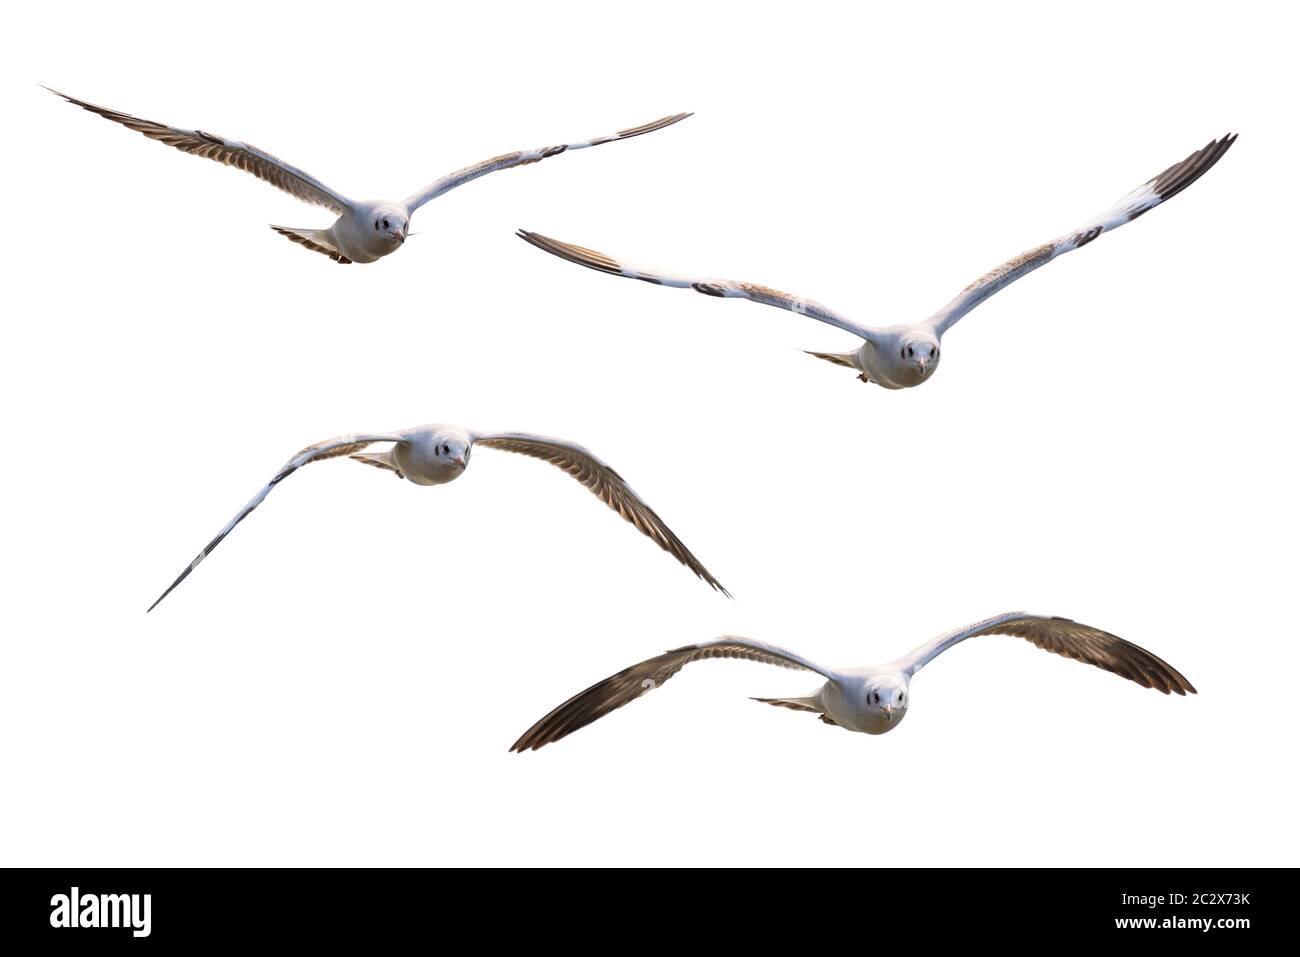 Four white seagulls flying Stock Photo